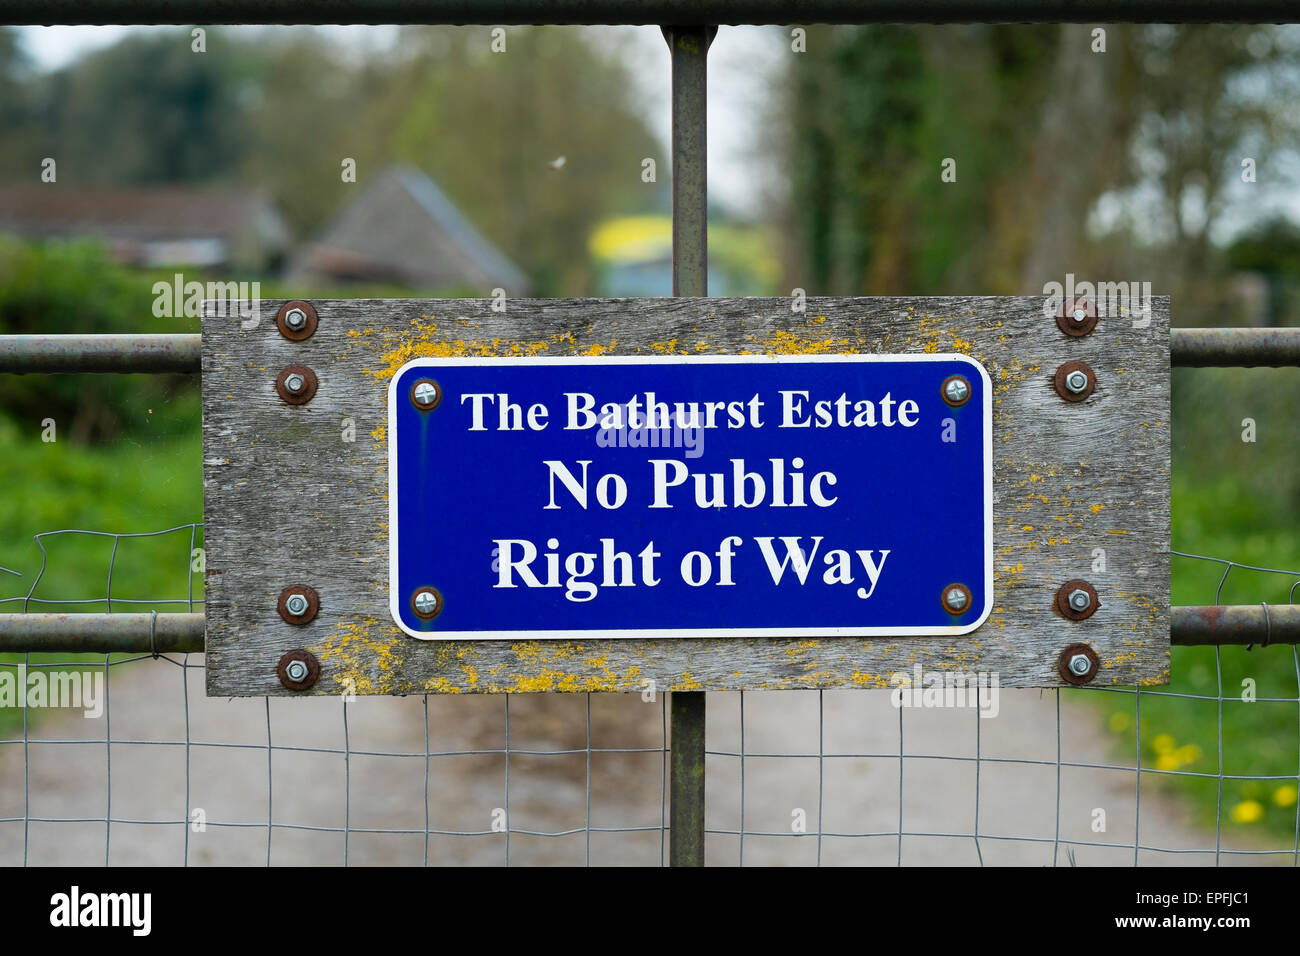 L'accès à l'espace rural : un signe pour les immobiliers Bathhurst - Pas de droit de passage public sur la périphérie de Cirencester, Gloucestershire, Angleterre, Royaume-Uni Banque D'Images